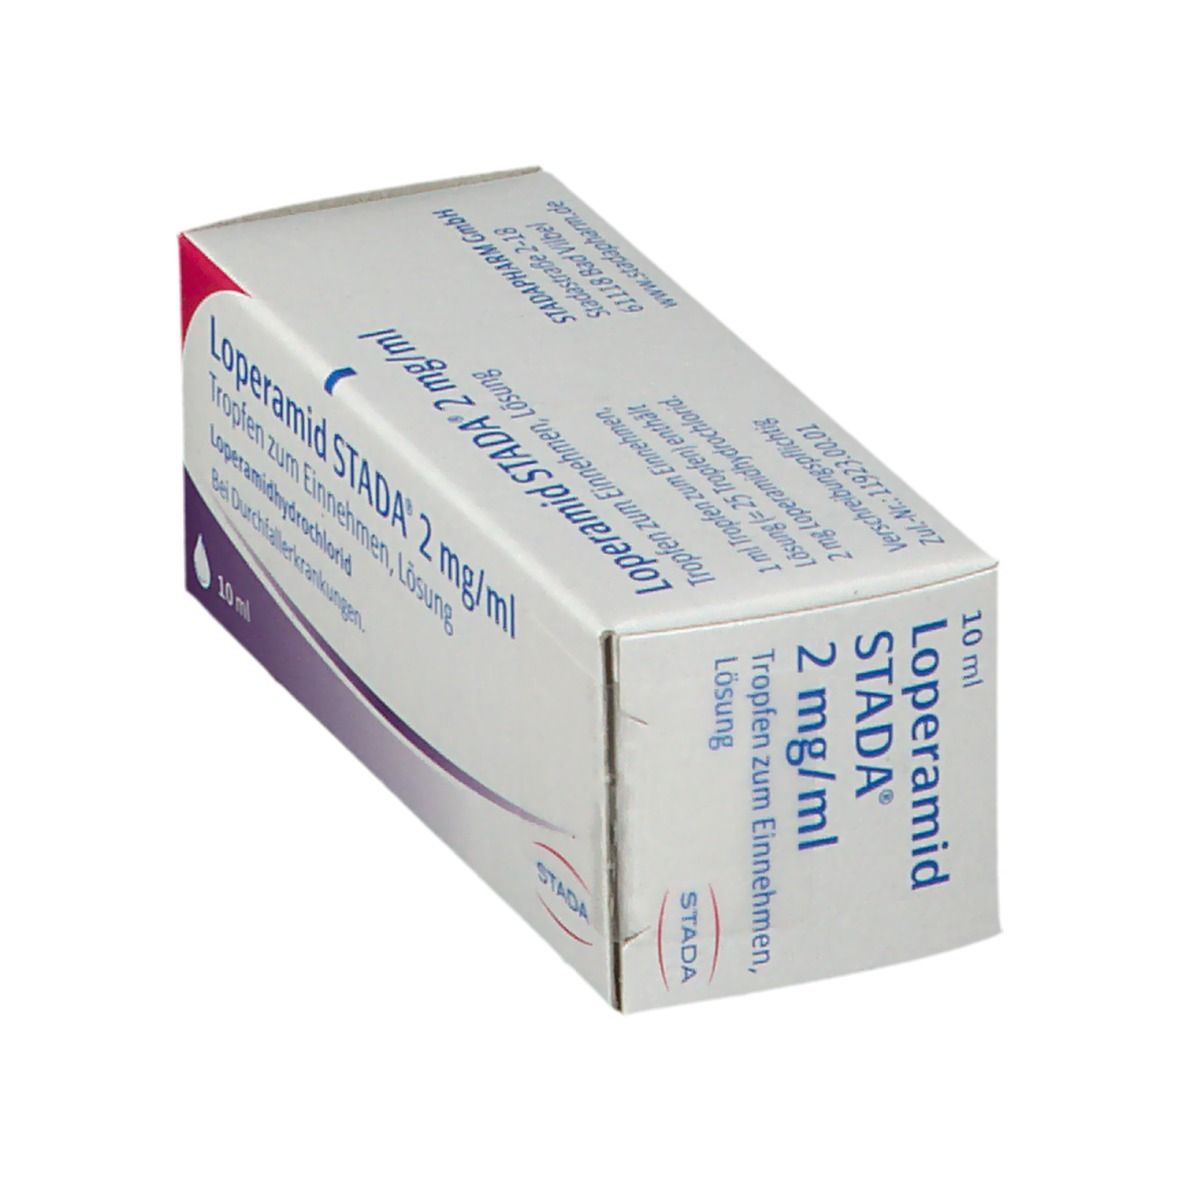 Loperamid STADA® 2 mg/ml Tropfen